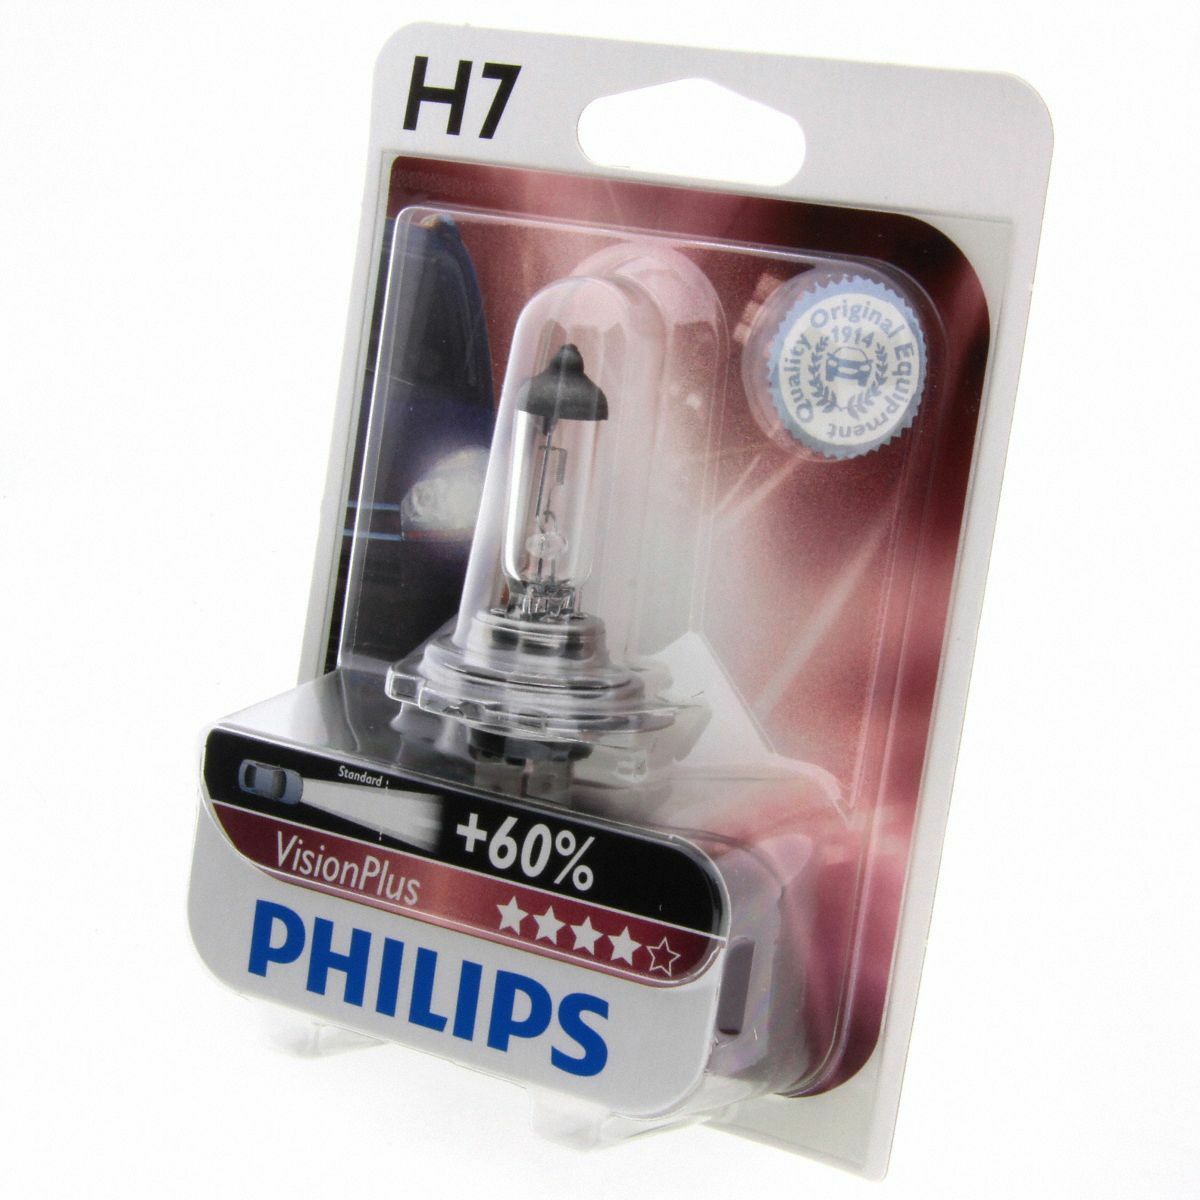 H7 Philips VisionPlus bis zu 60% mehr Licht Halogenlampe 12972VP Blister 1 Stück